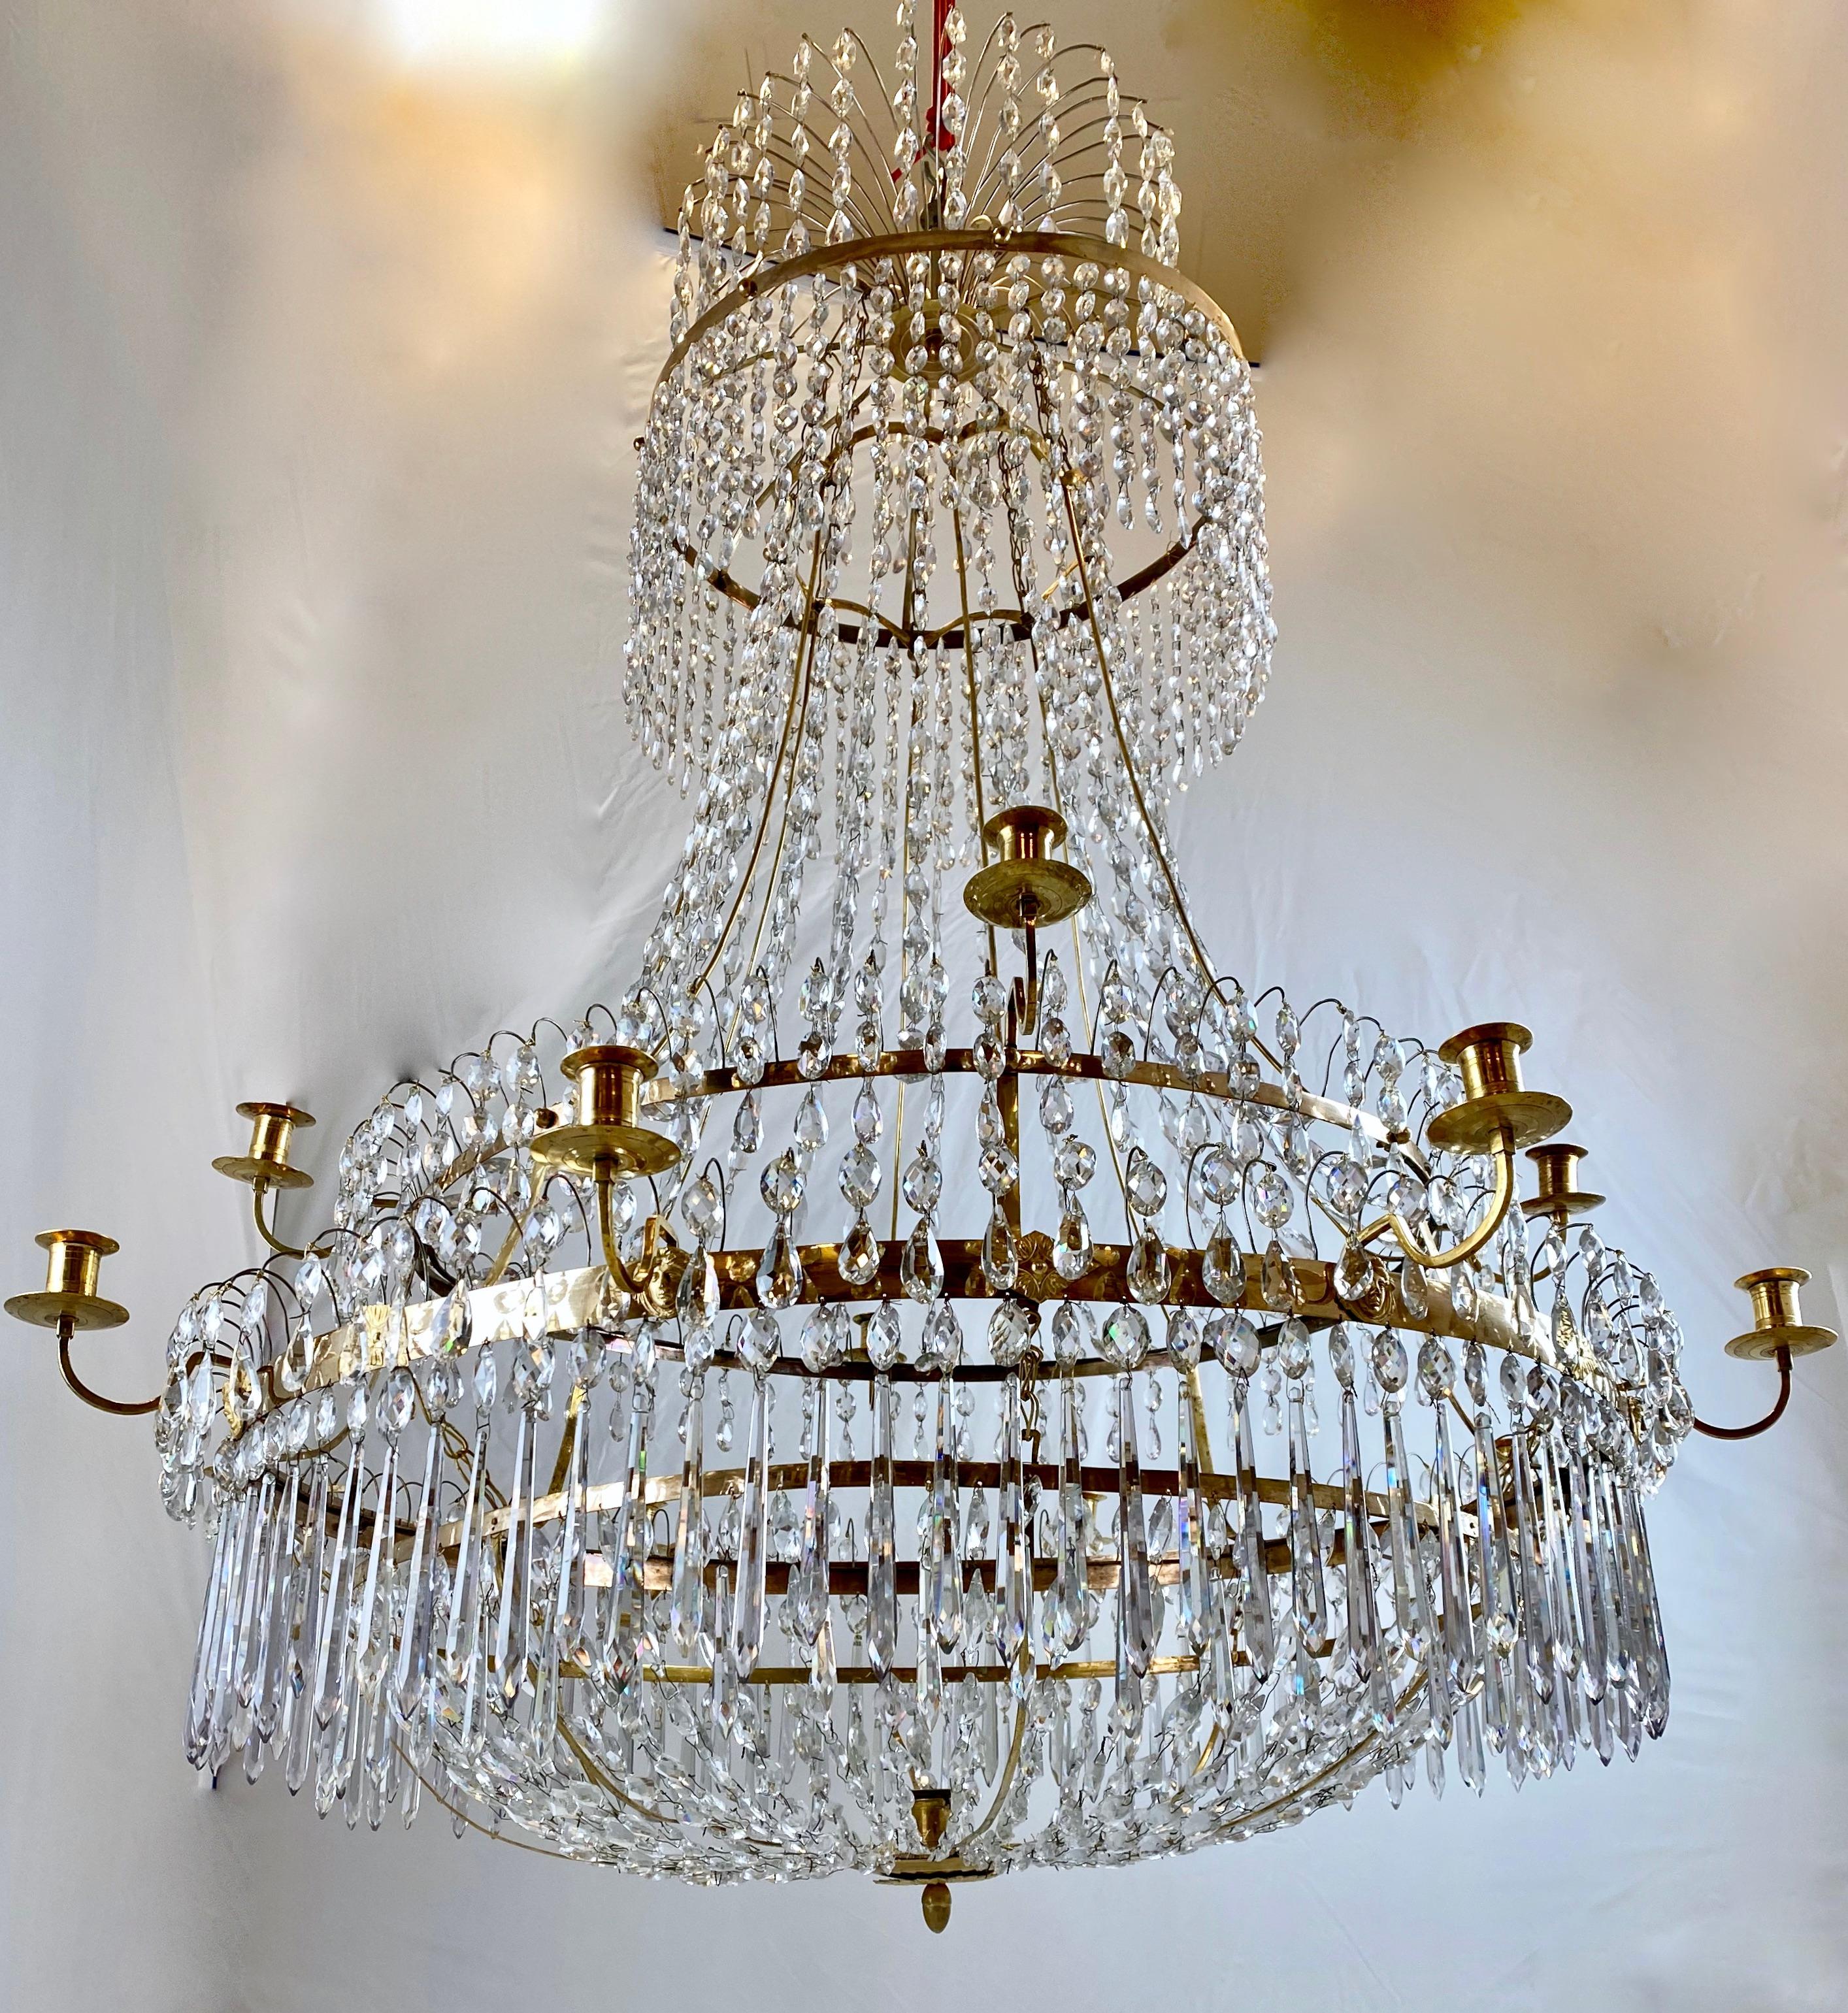 1800 chandeliers